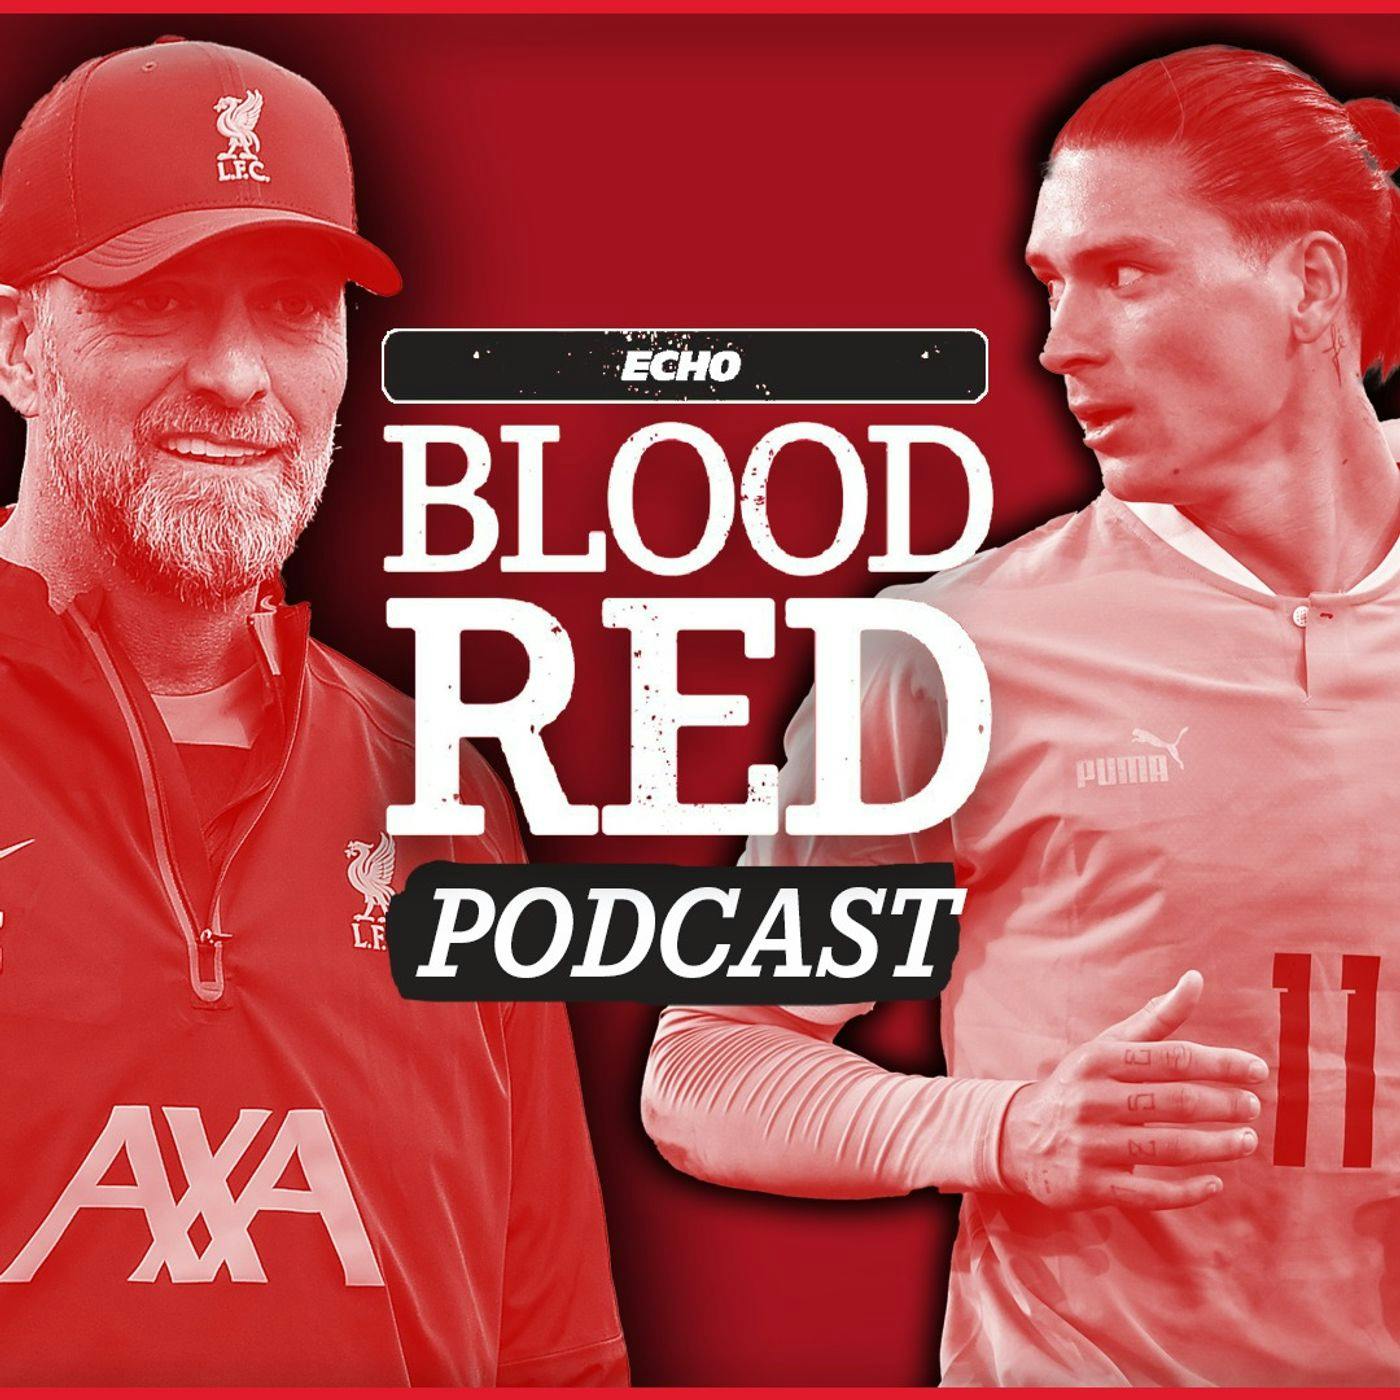 Blood Red: Liverpool face defining period as Darwin Nunez can help hand Jurgen Klopp boost